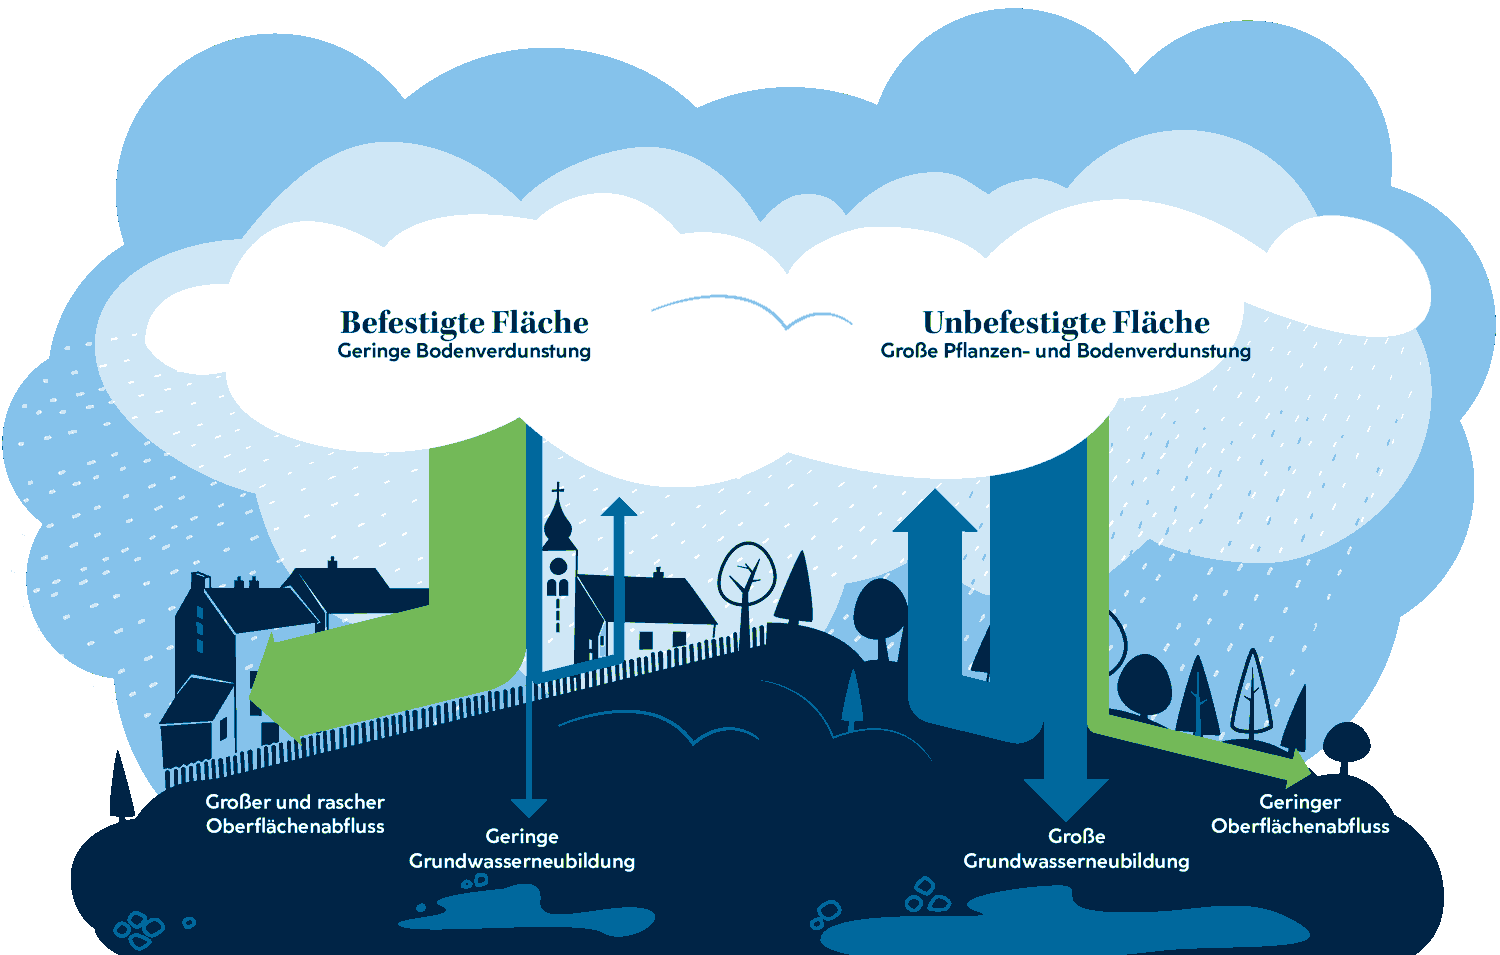 Das in blau gehaltene stilistische Bild zeigt vor der Kulisse eines Dorfes und einer Naturlandschaft das Versickerungs- und Abflussverhalten von Niederschlägen. Auf versiegelten Flächen fließt über 90% des Regenwassers ab und geht dadurch verloren für die Grundwasserneubildung.